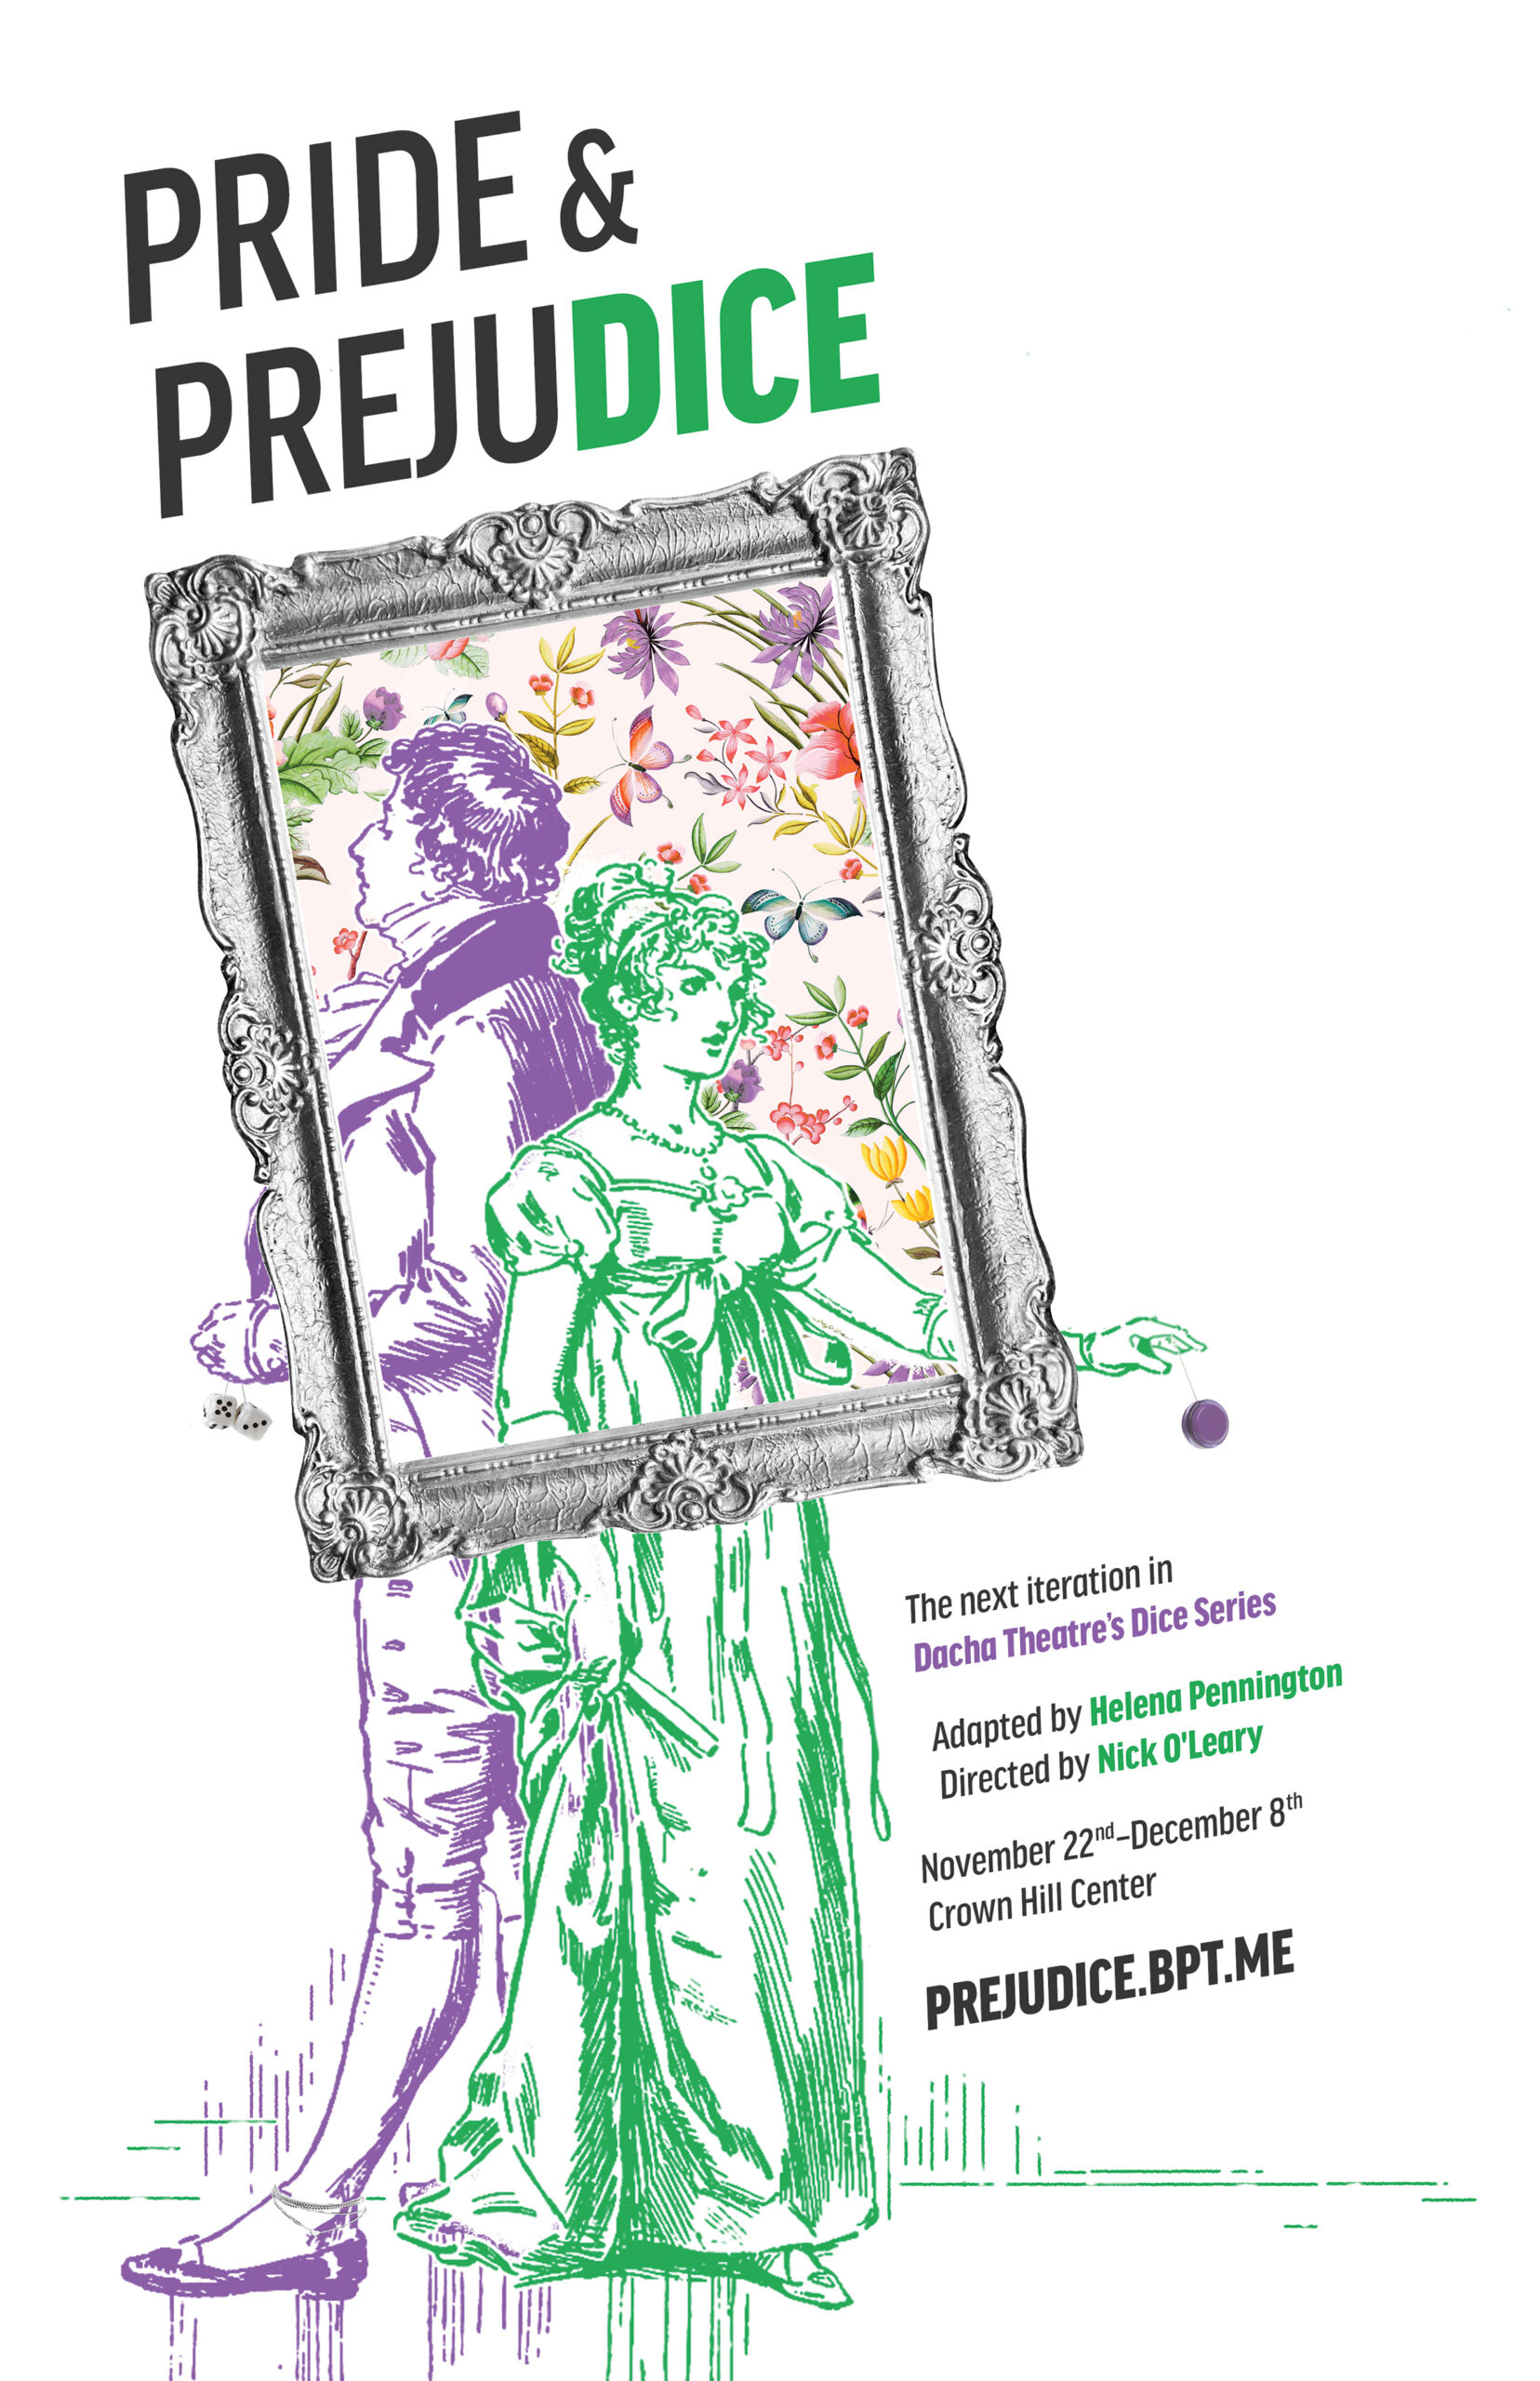 PrideandPrejudice_Poster_vf2_PRINT